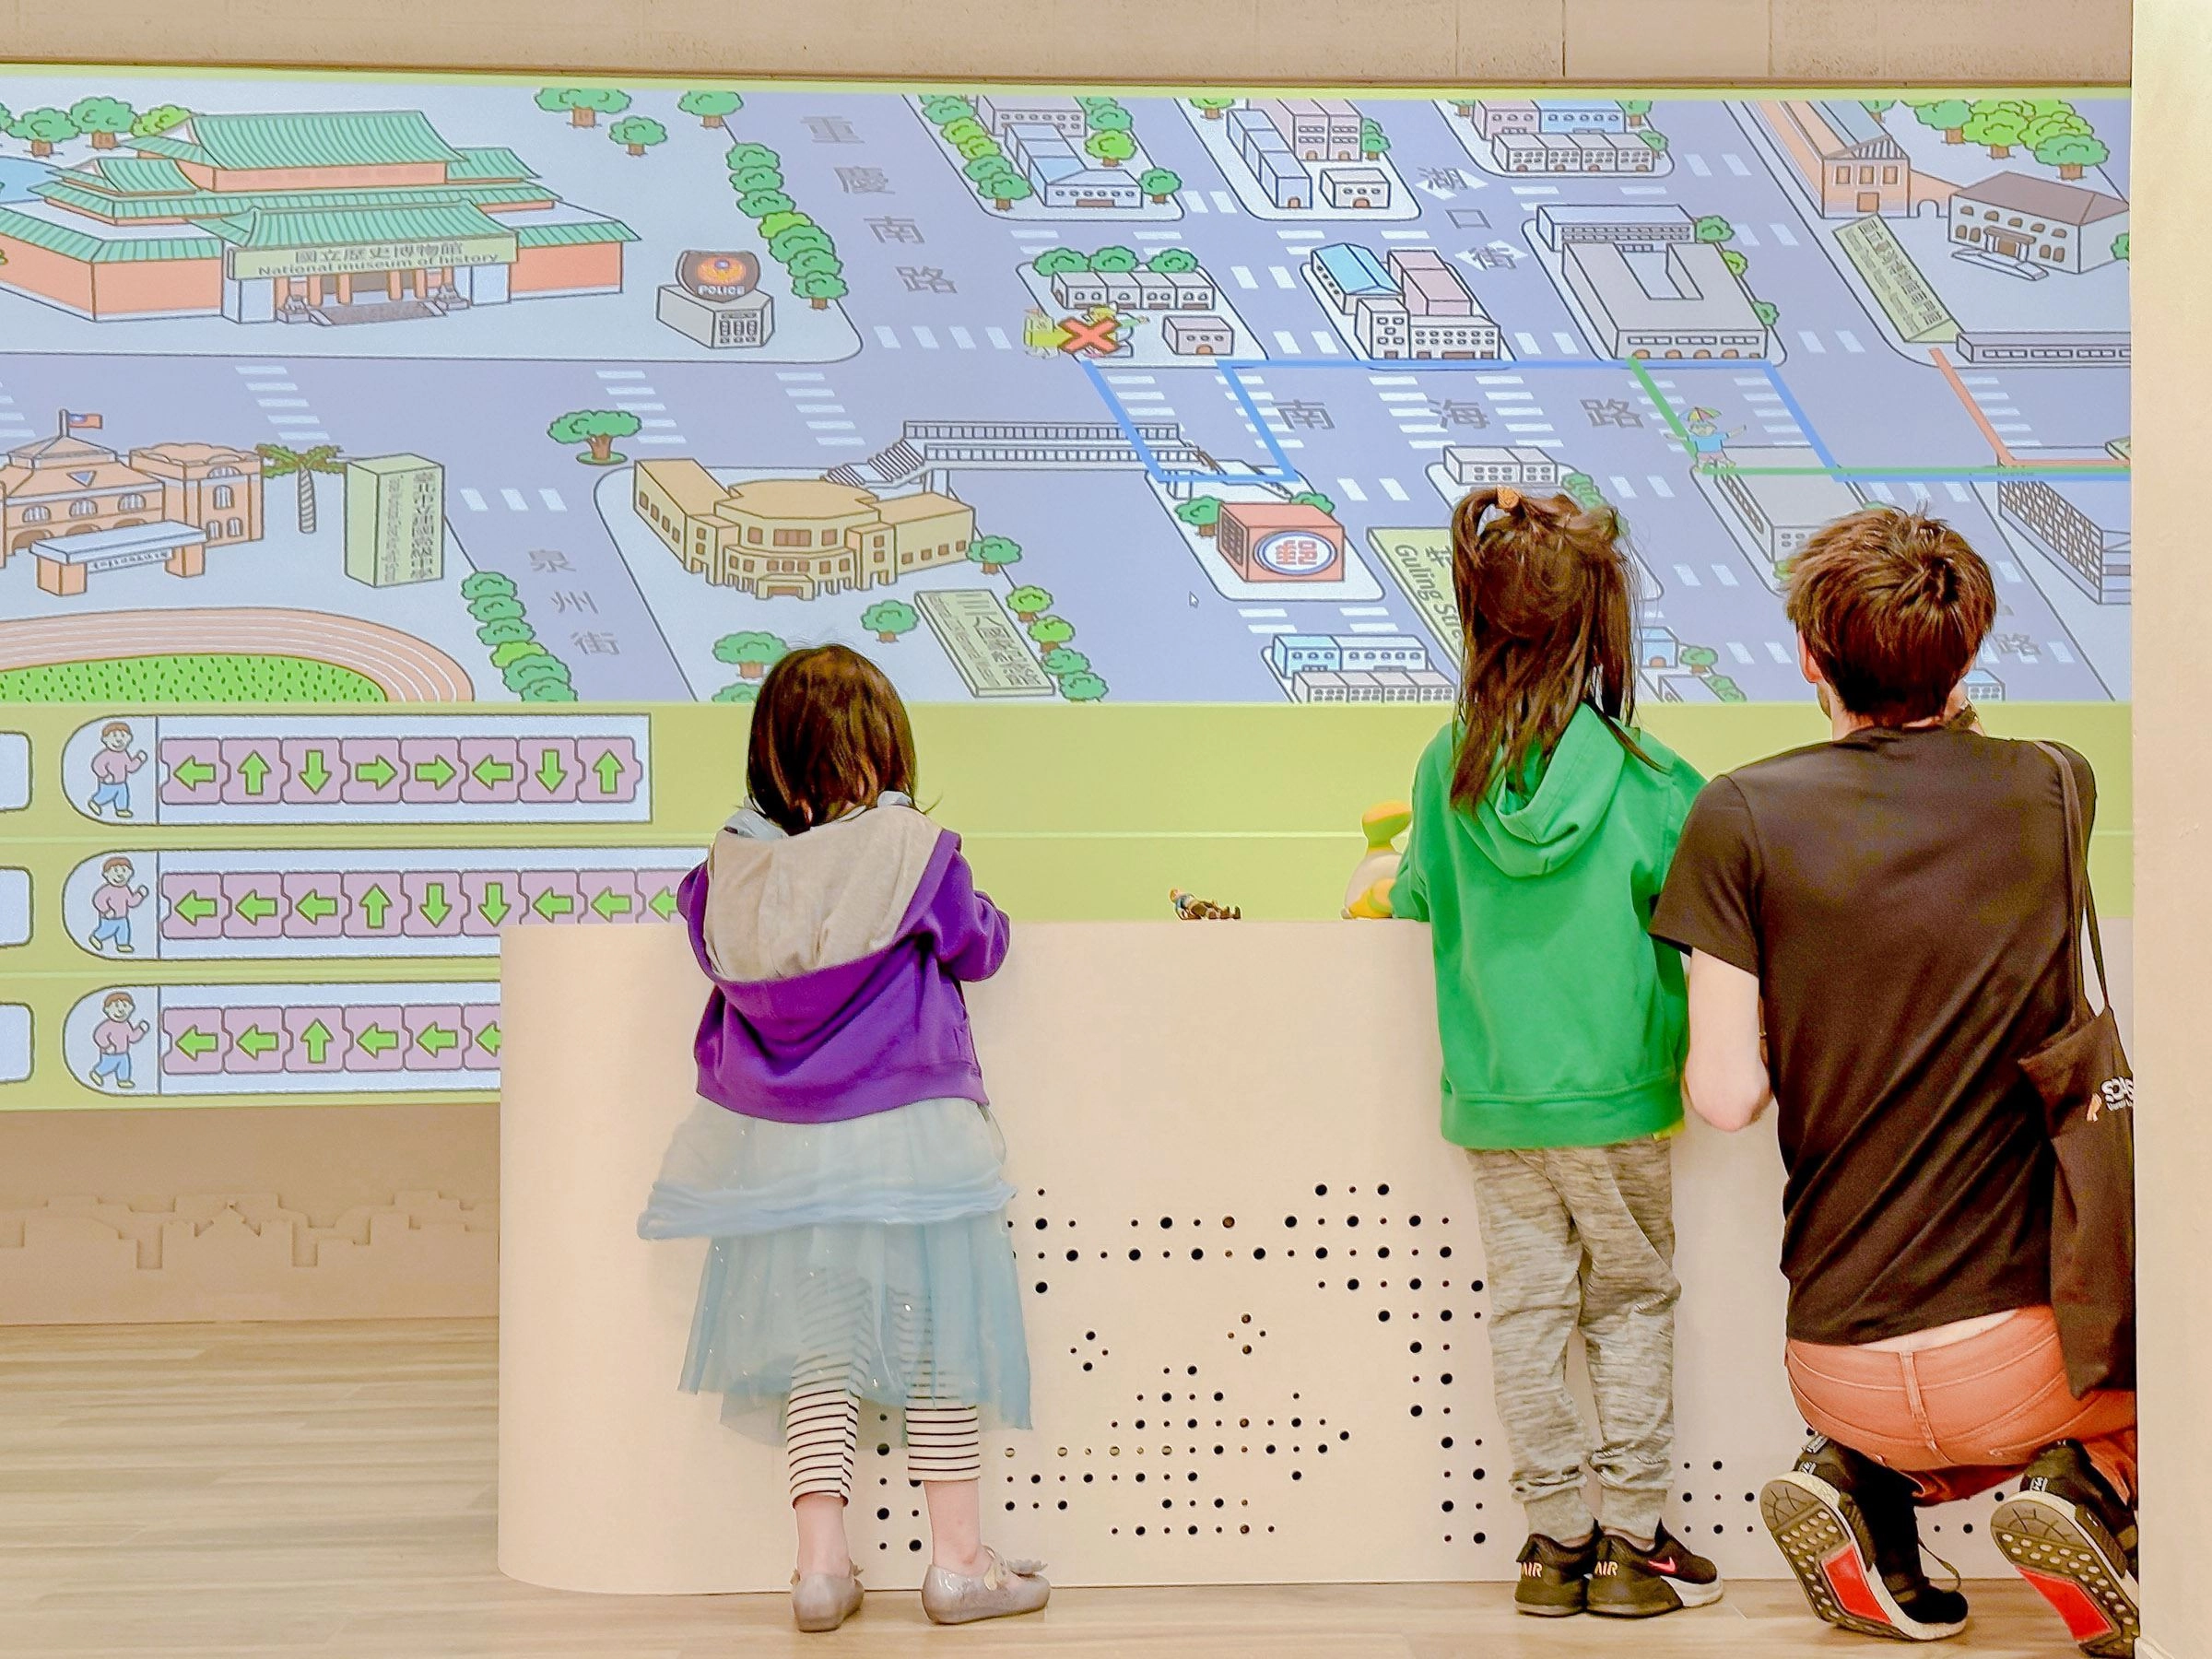 史博館創意共學空間 打造兒童學習重要基地